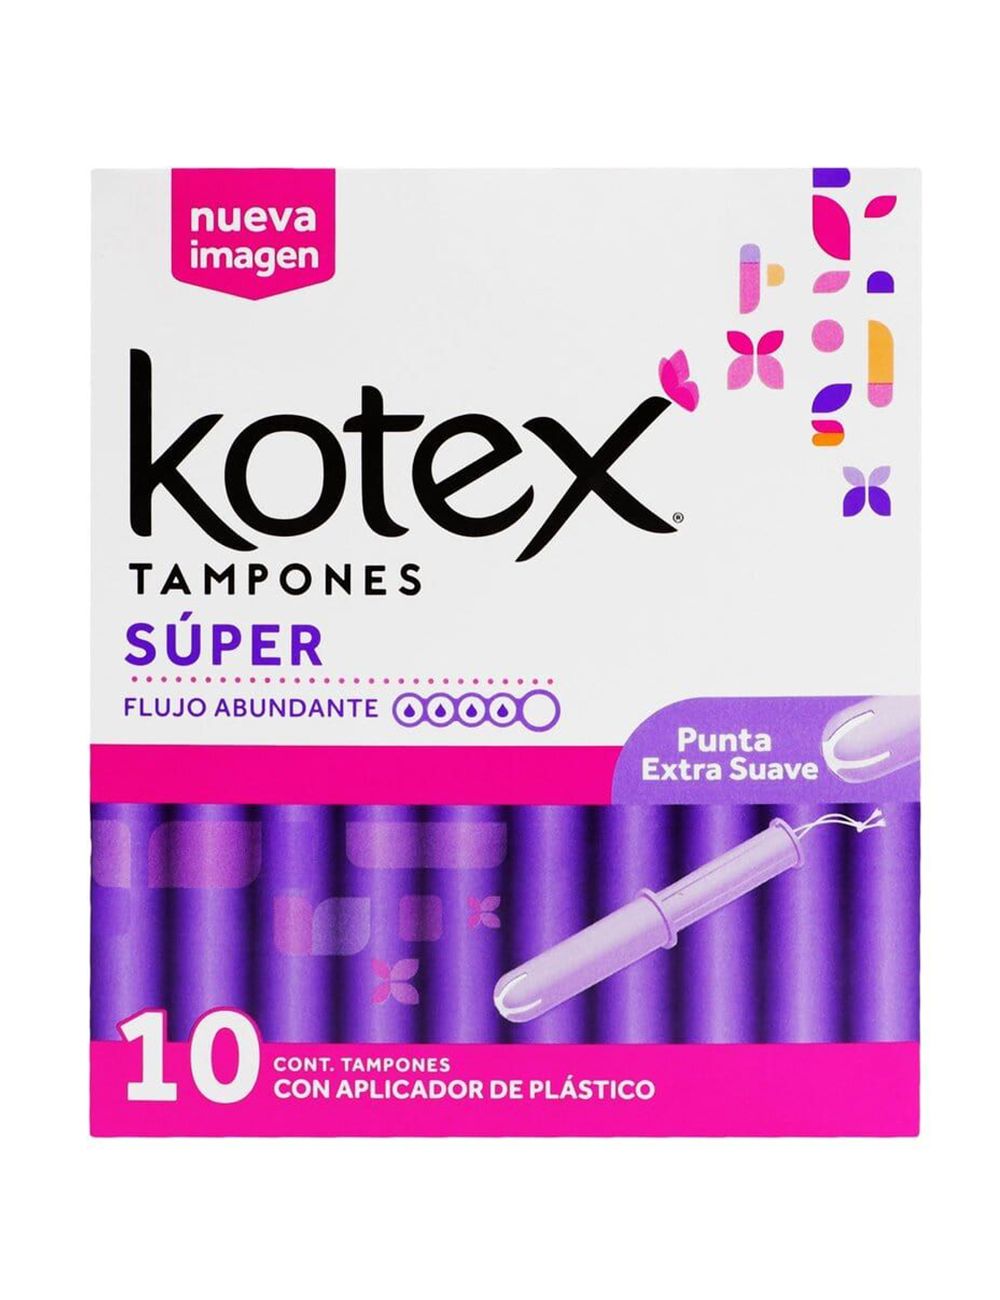 Precio tampones kotex super flujo abundante | Farmalisto MX